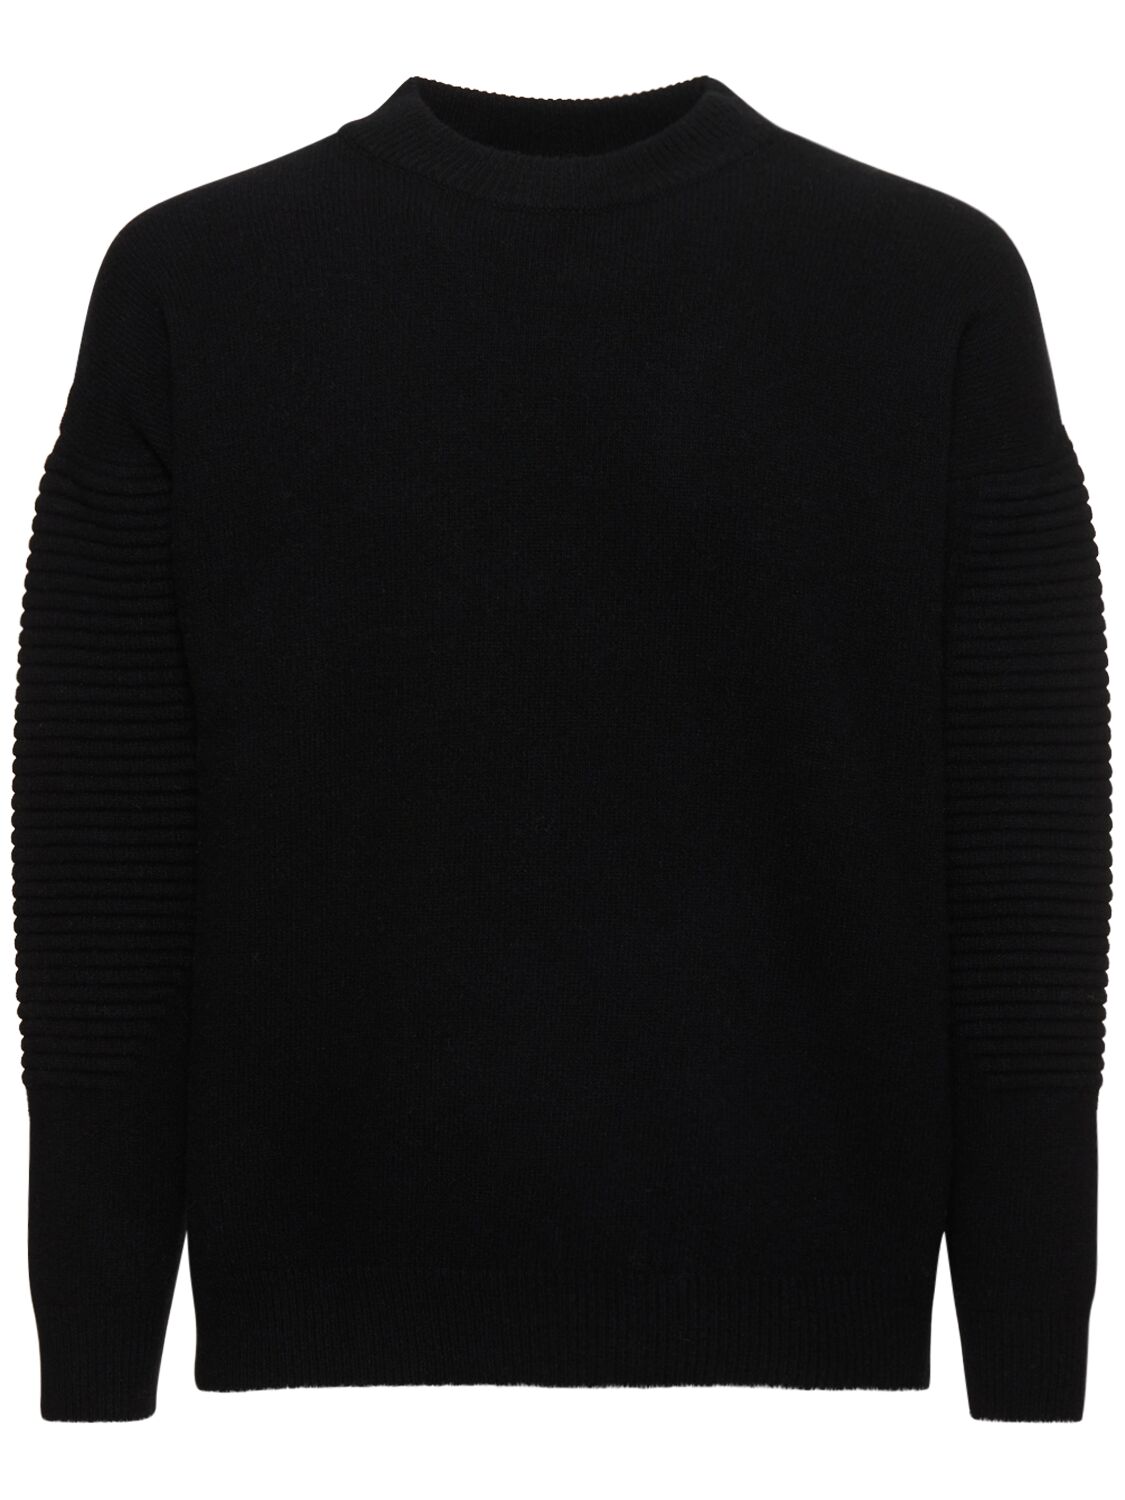 Ferrari Cashmere & Wool Knit Sweater In Black